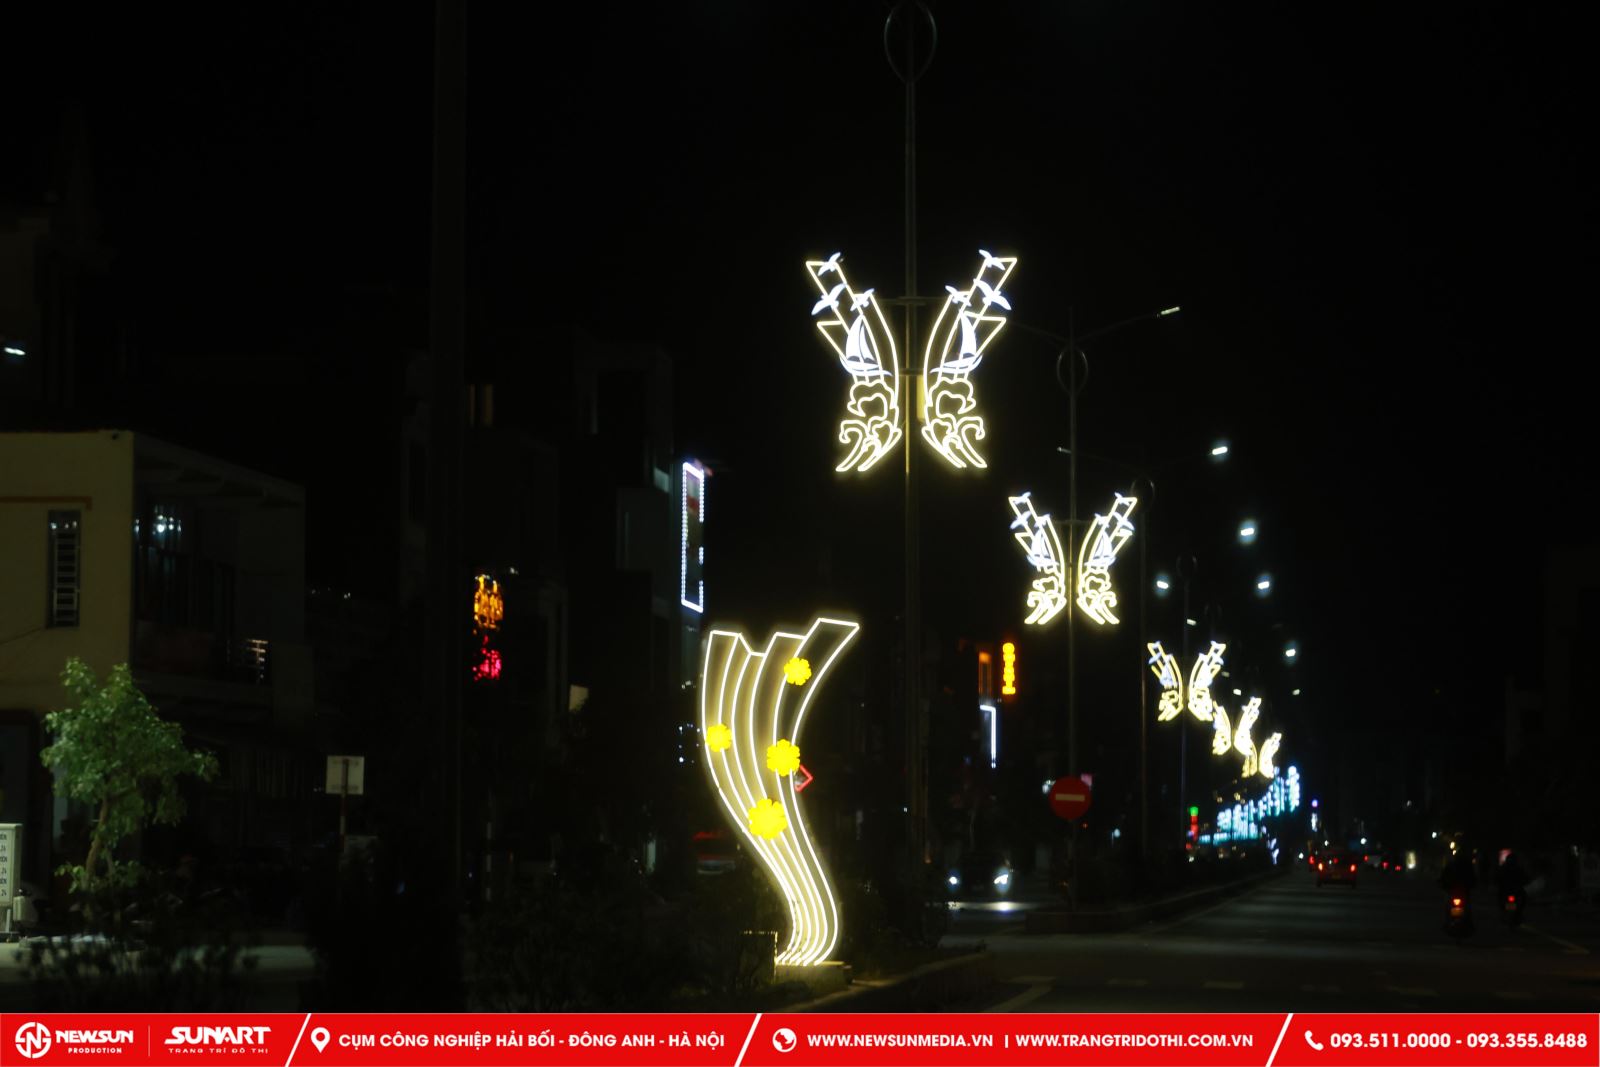 Việc trang trí đèn LED đường phố không chỉ đơn thuần là để tạo ra ánh sáng cho đêm tối, mà còn để tạo ra những trải nghiệm thị giác độc đáo, thu hút